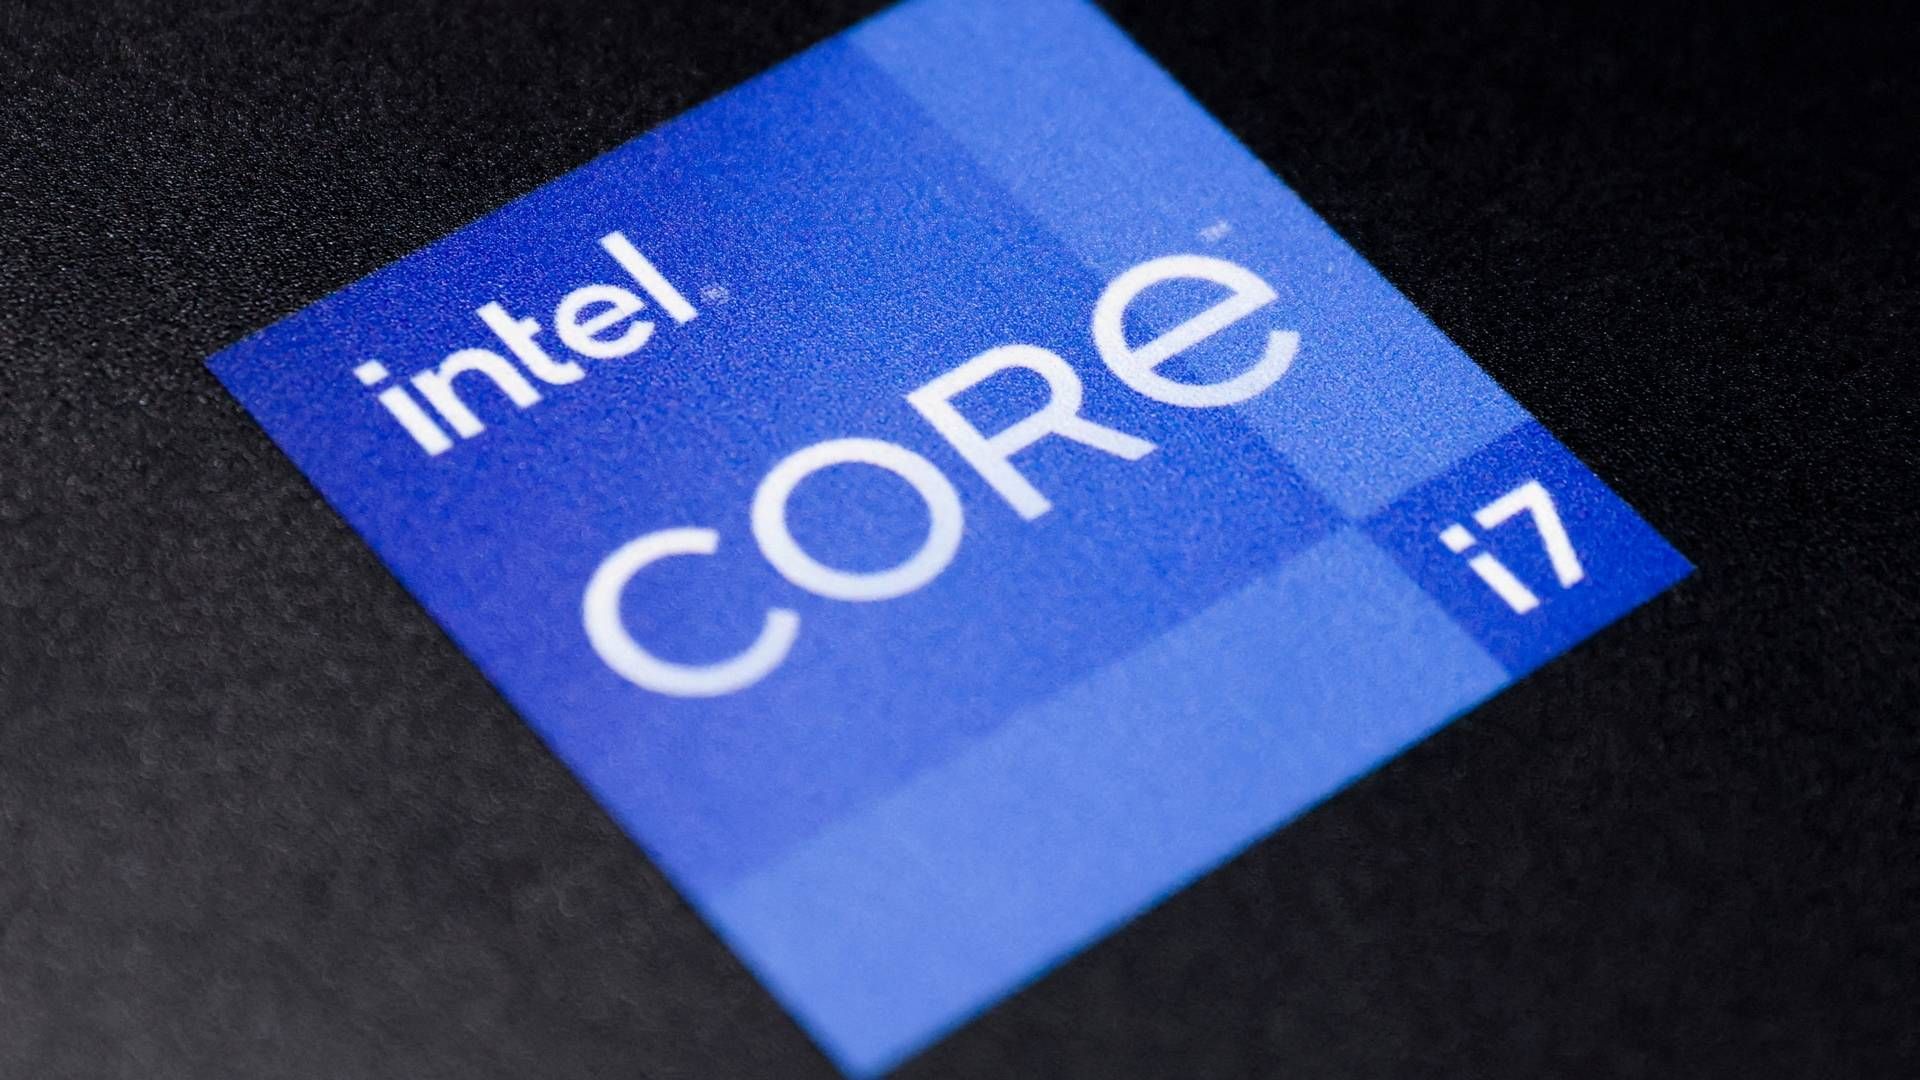 Intel klar med mindst 20 mia. dollar til chipfabrik i Ohio